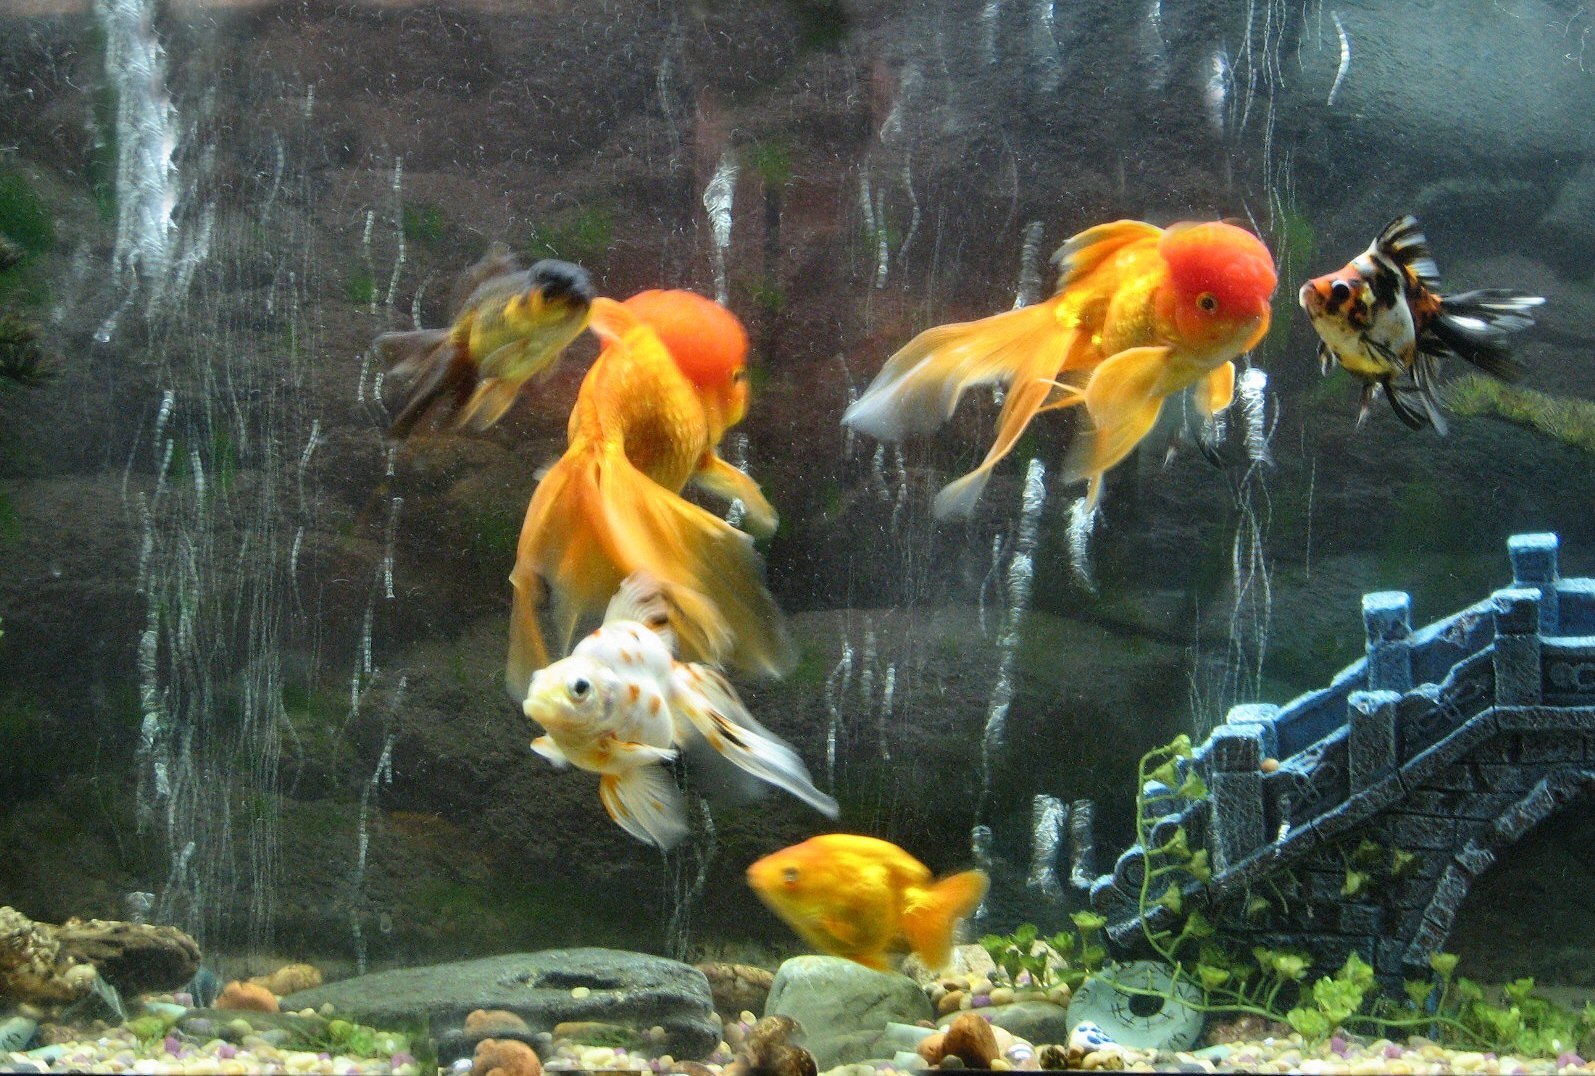 fish tank hd images